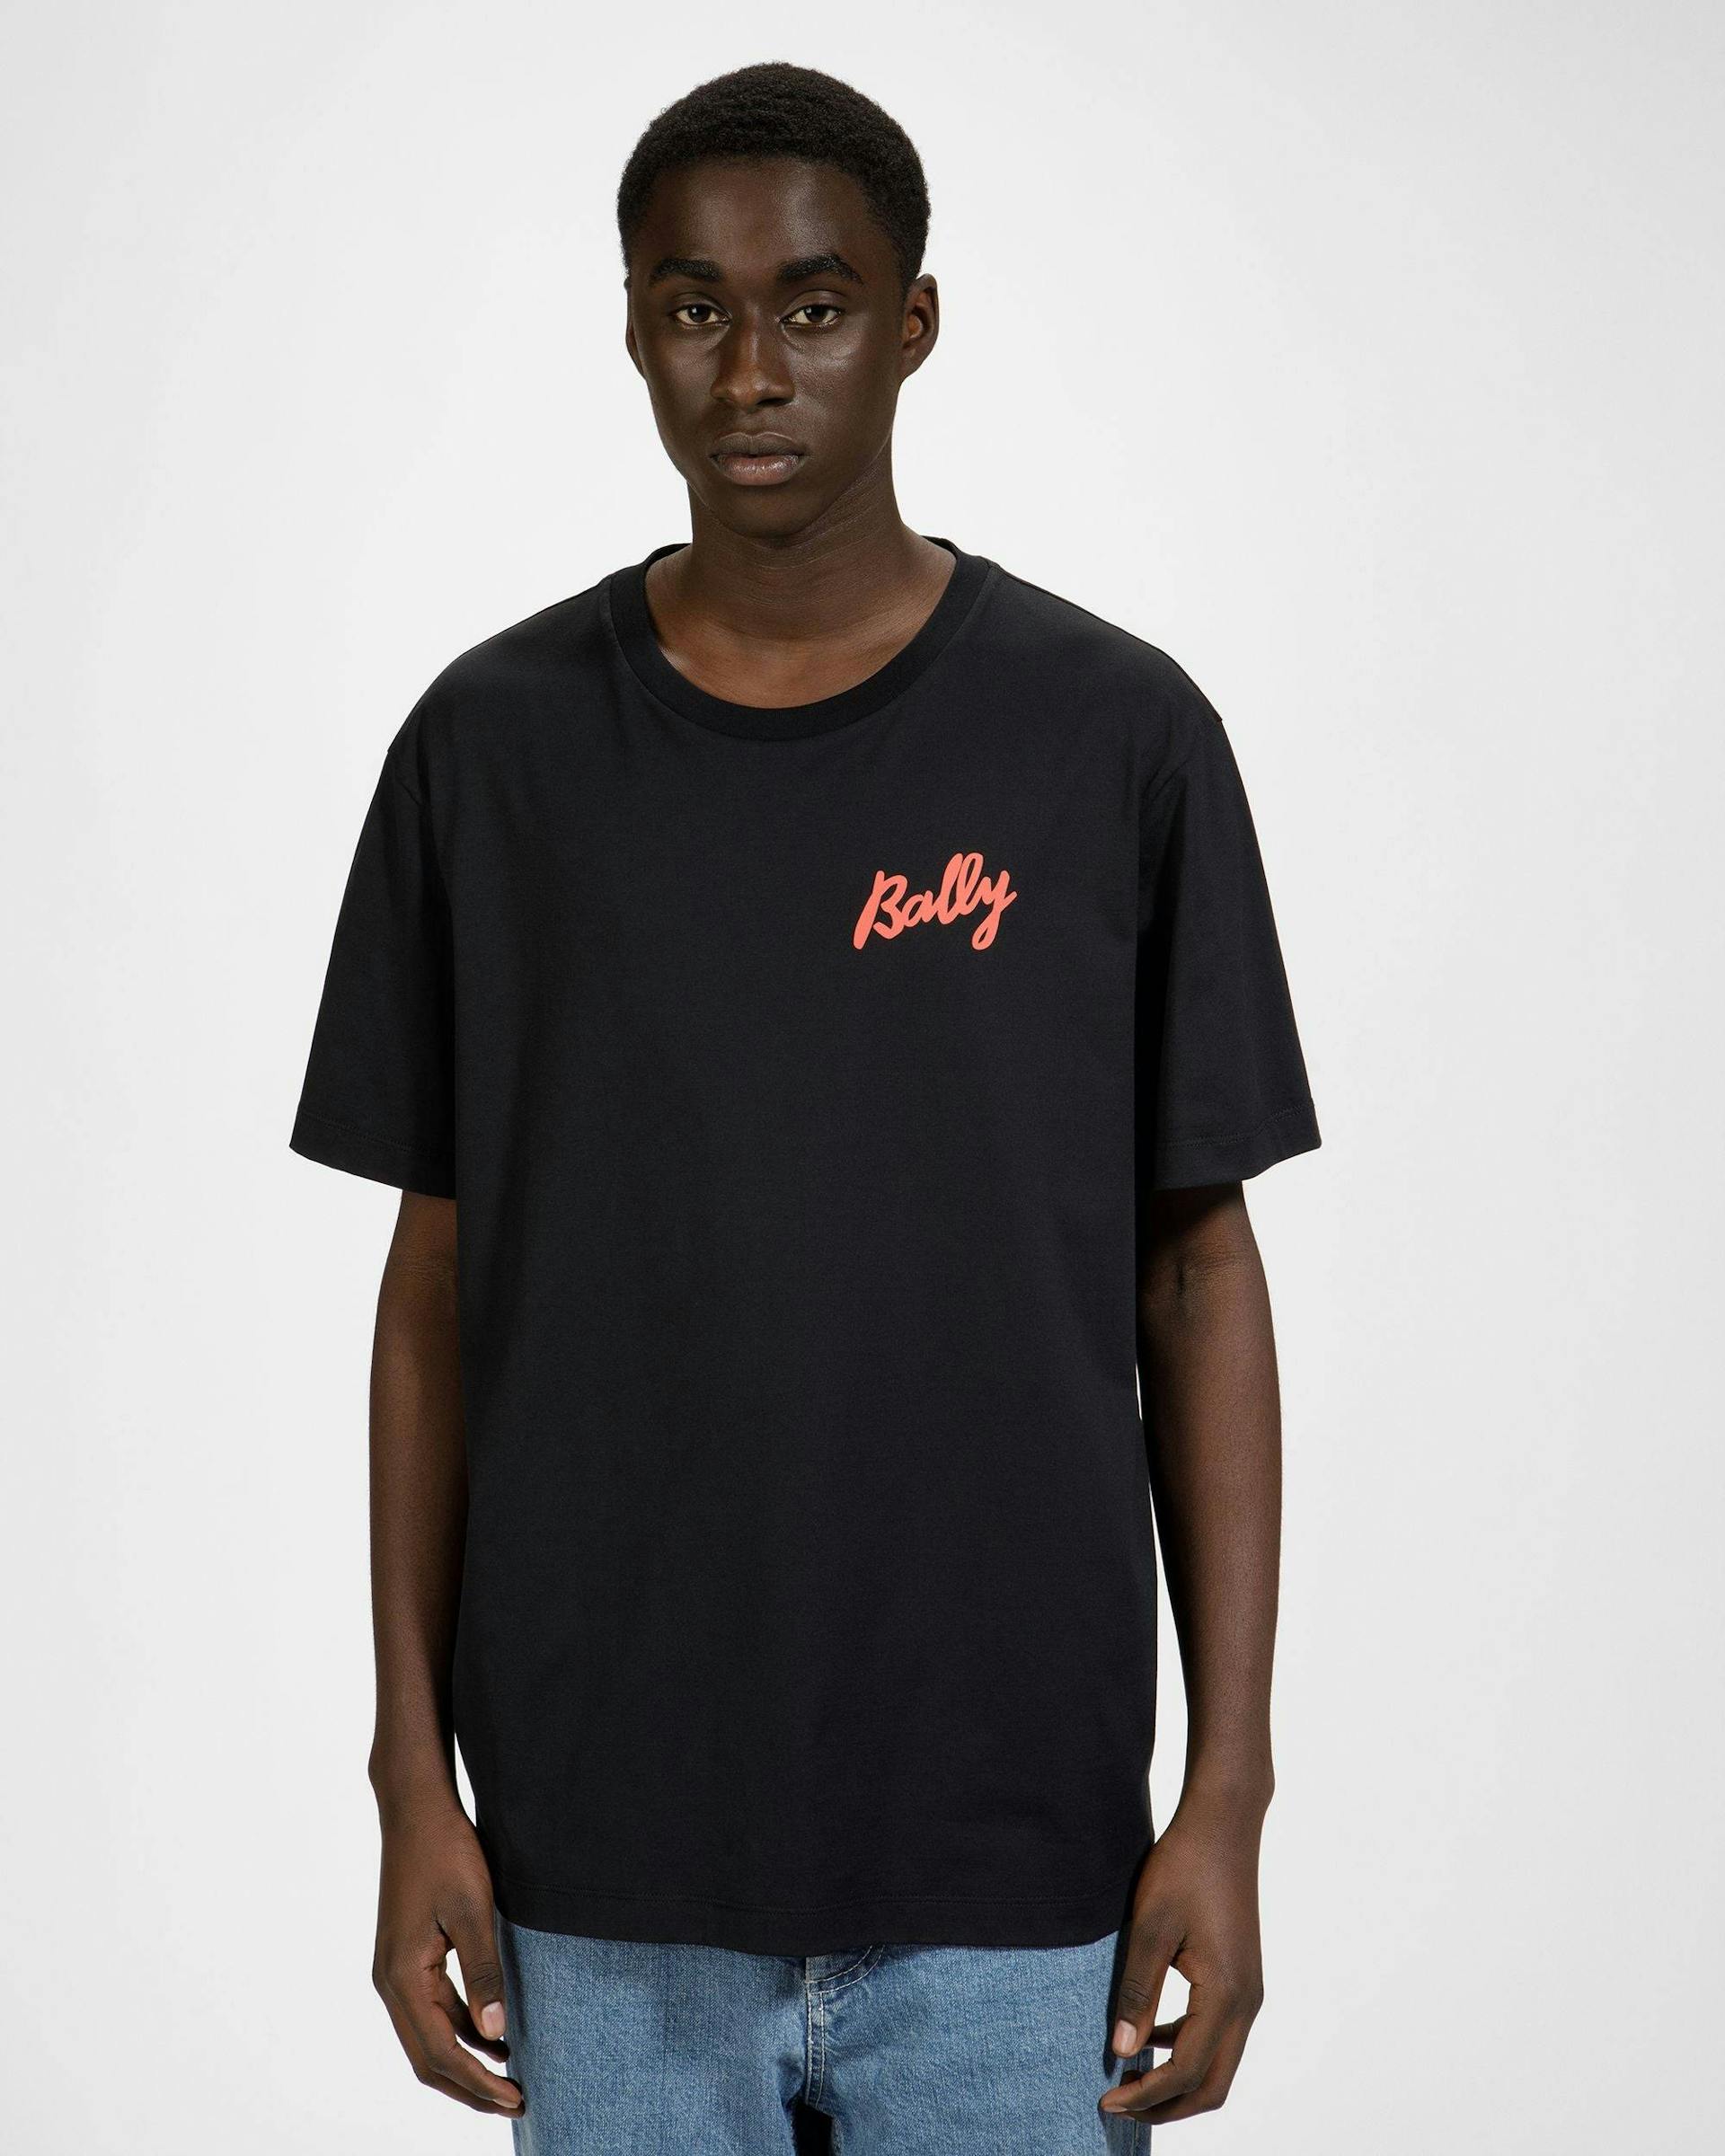 T-Shirt In Cotone Nero E Arancione - Uomo - Bally - 03